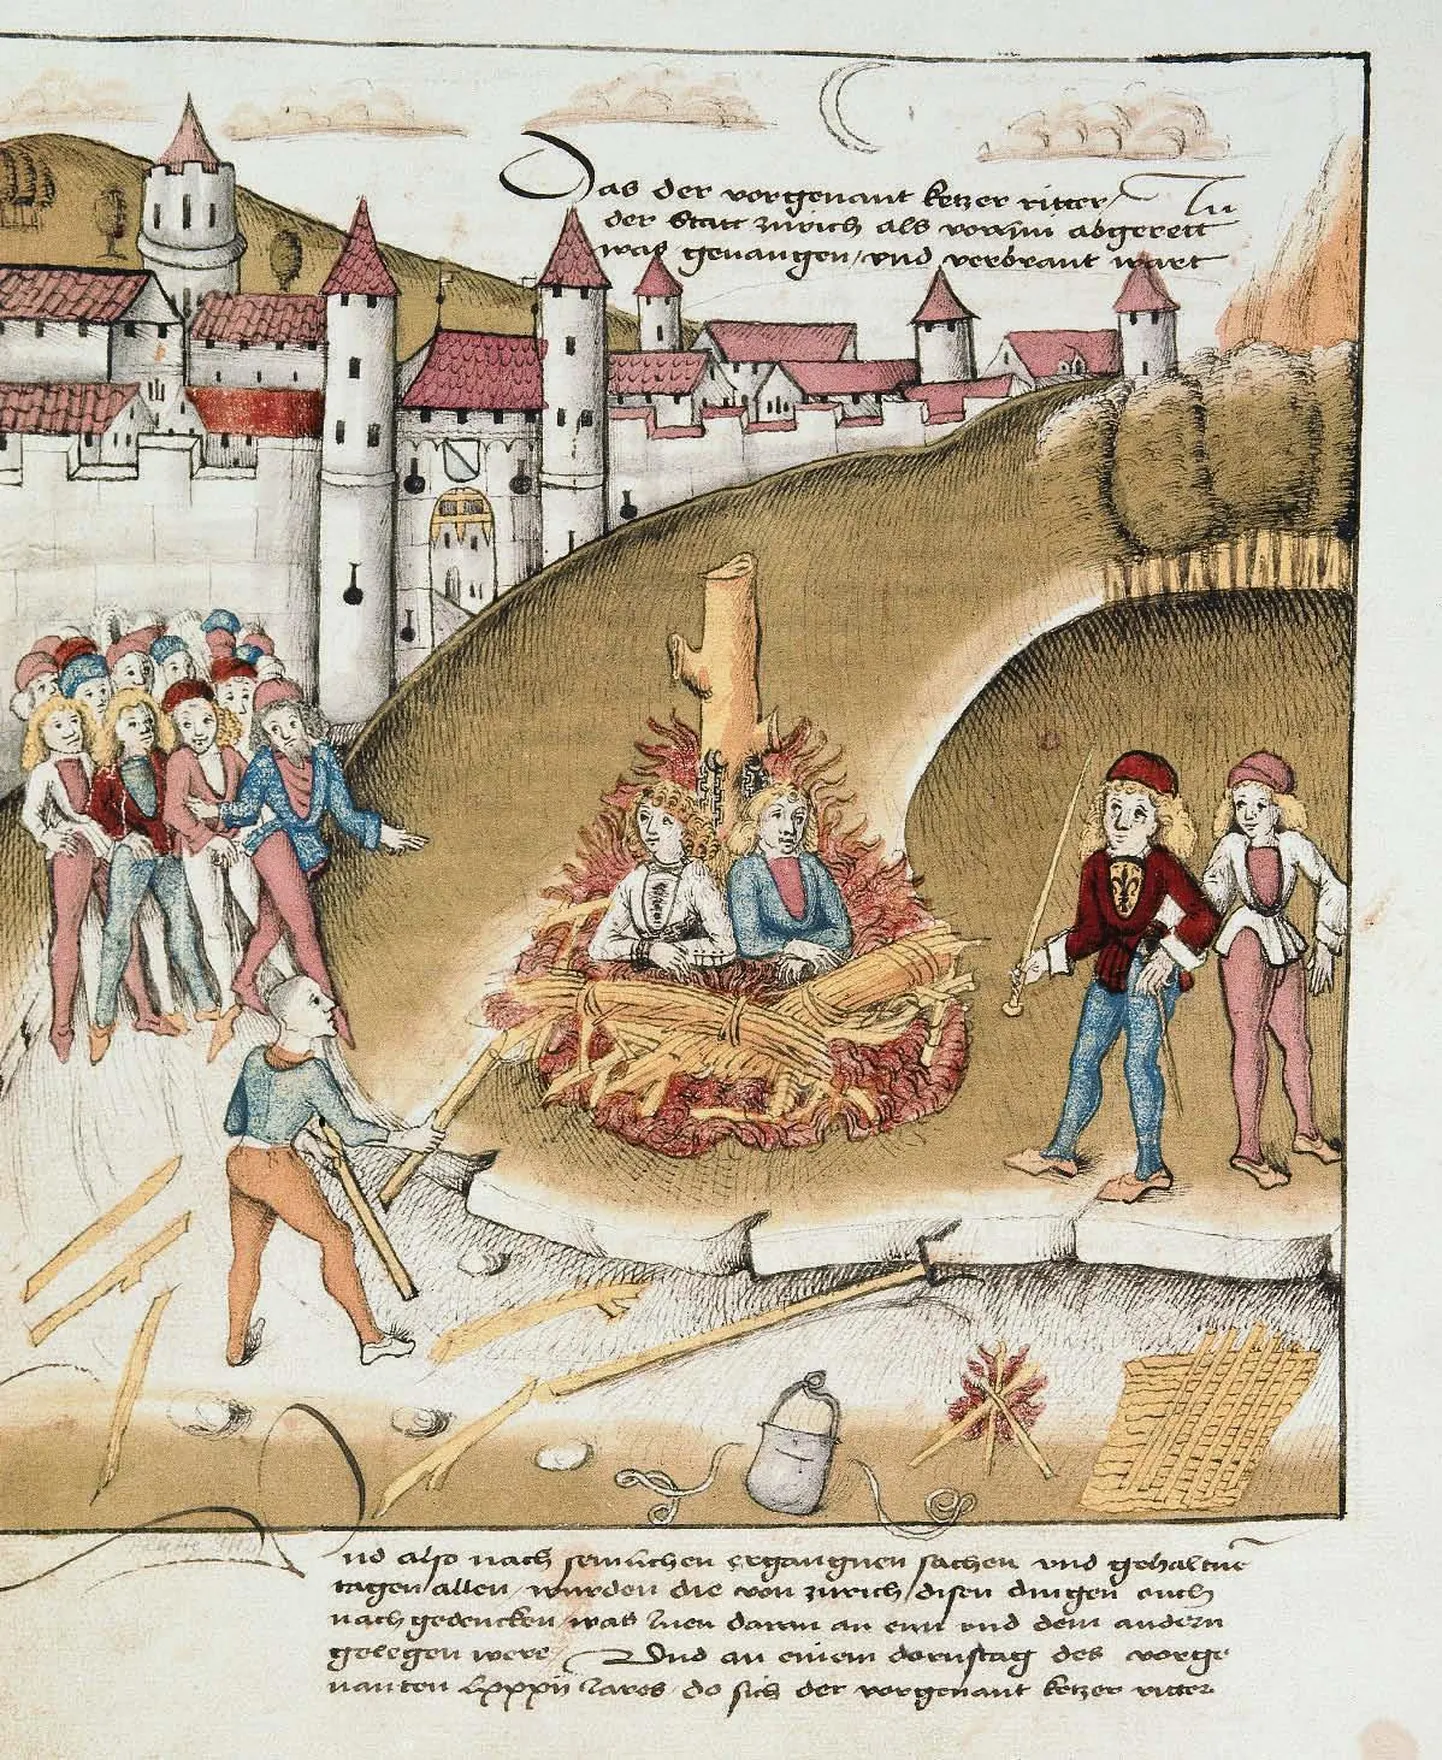 1482. aastal põletati Zürichis elusalt rüütel Richard Puller von Hohenburg, kes oli homoseksuaalses suhtes oma teenriga. Ka Tallinna raekohus mõistis eriti tõsiste kuritegude eest karistuseks tulesurma.